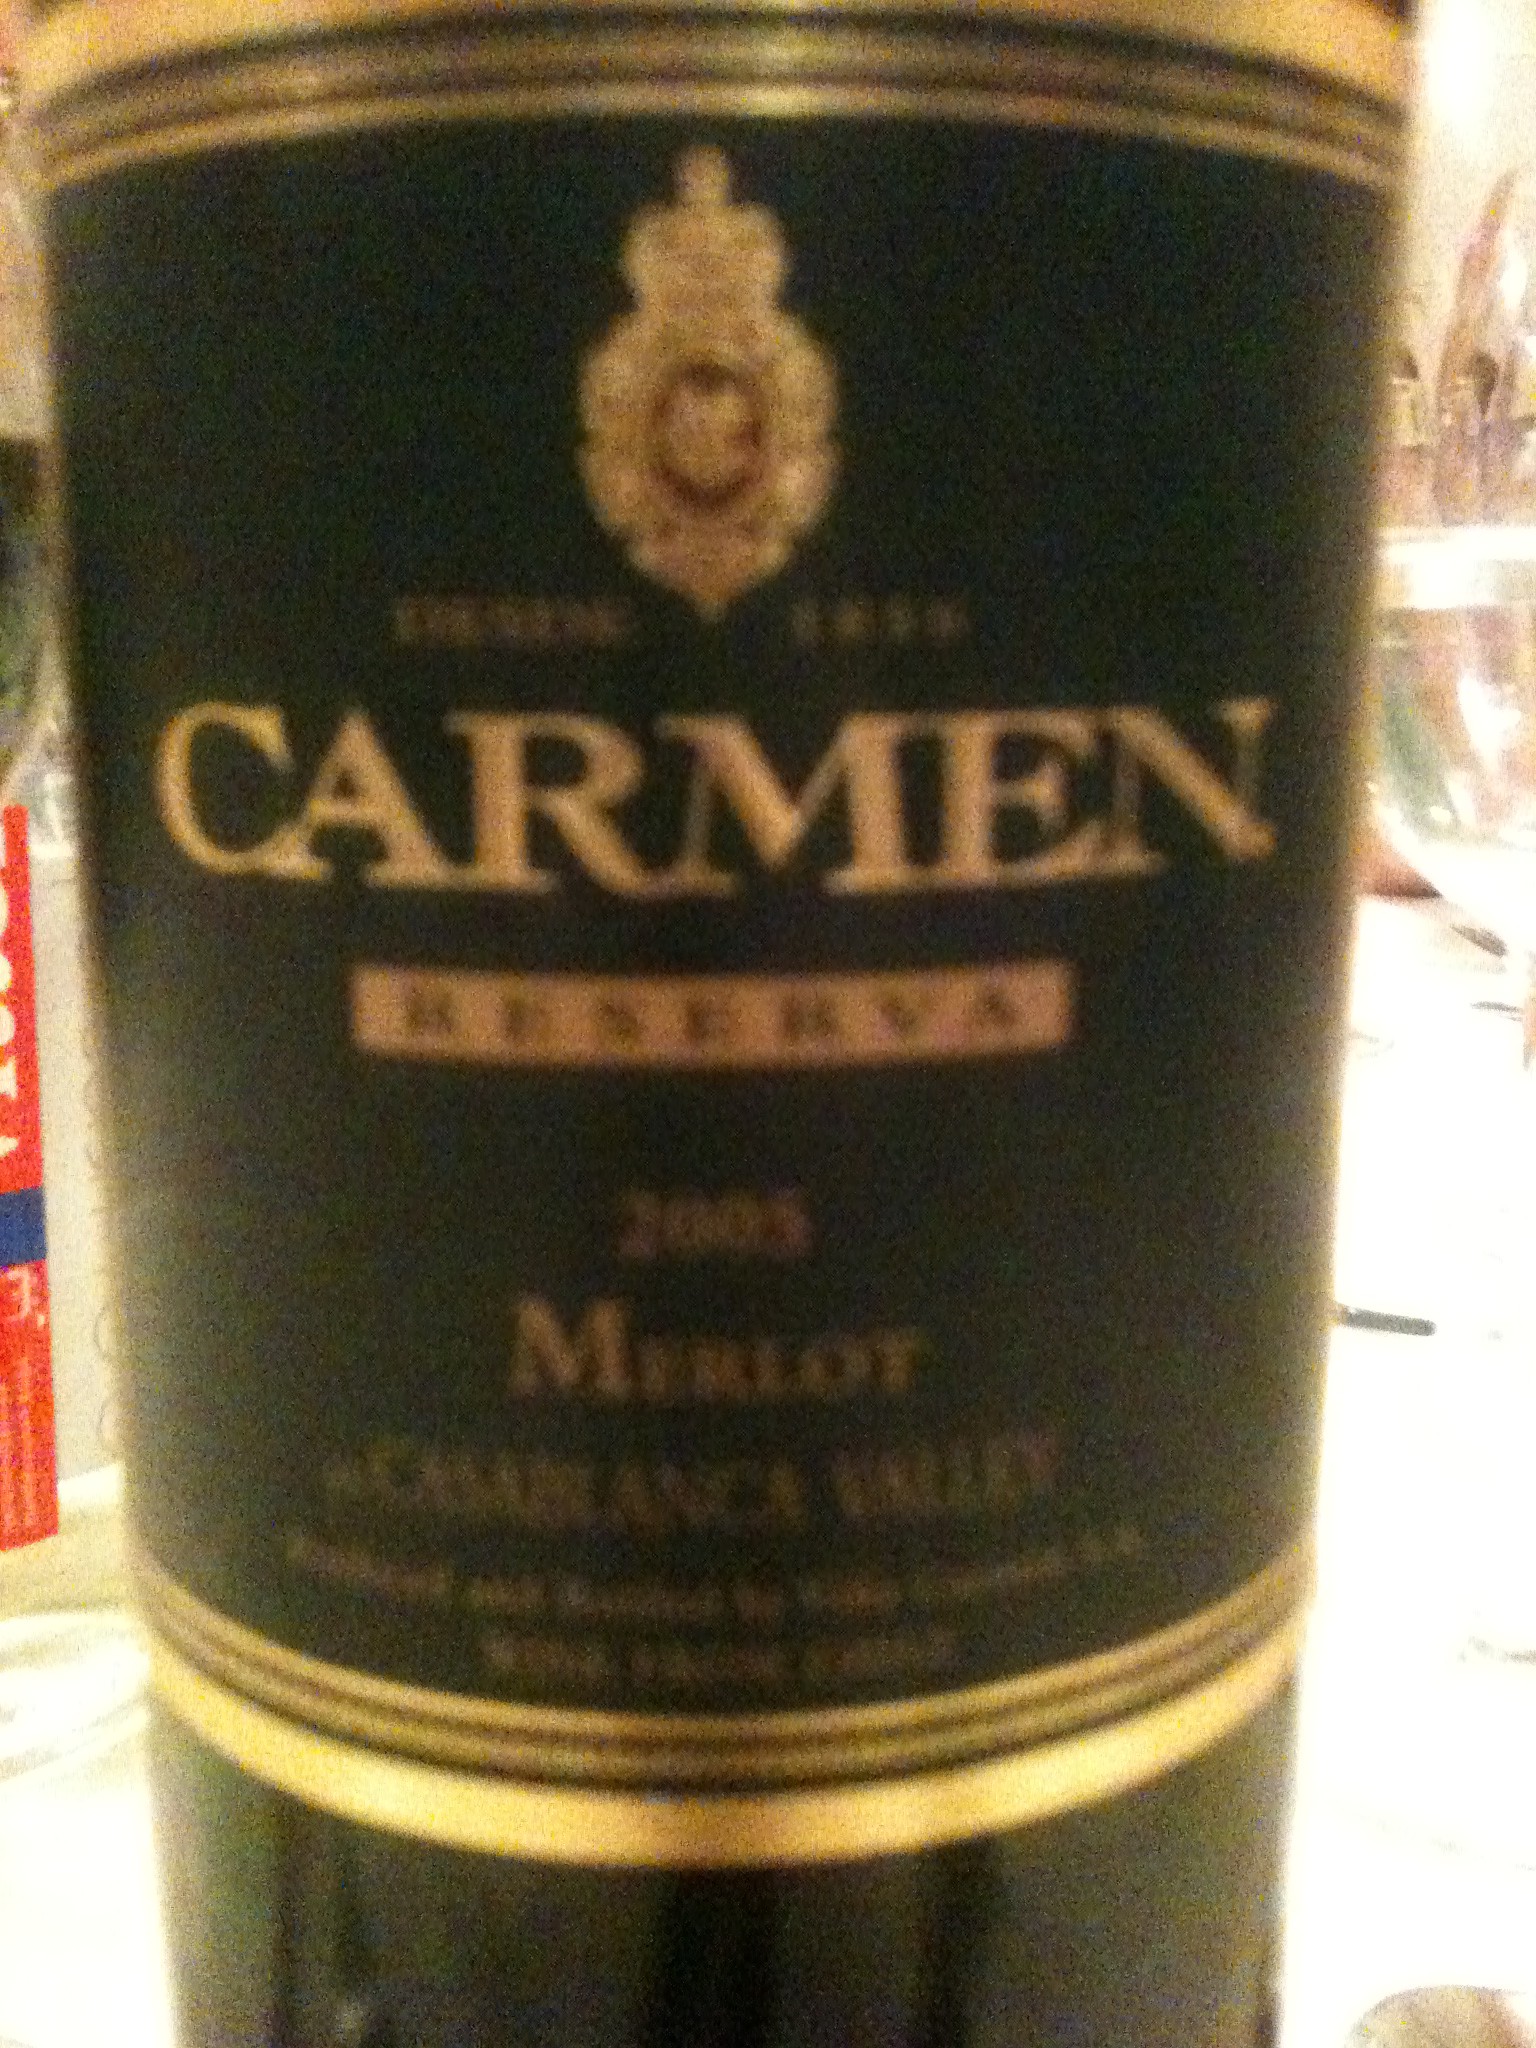 Carmen Reserva, Merlot, 2006